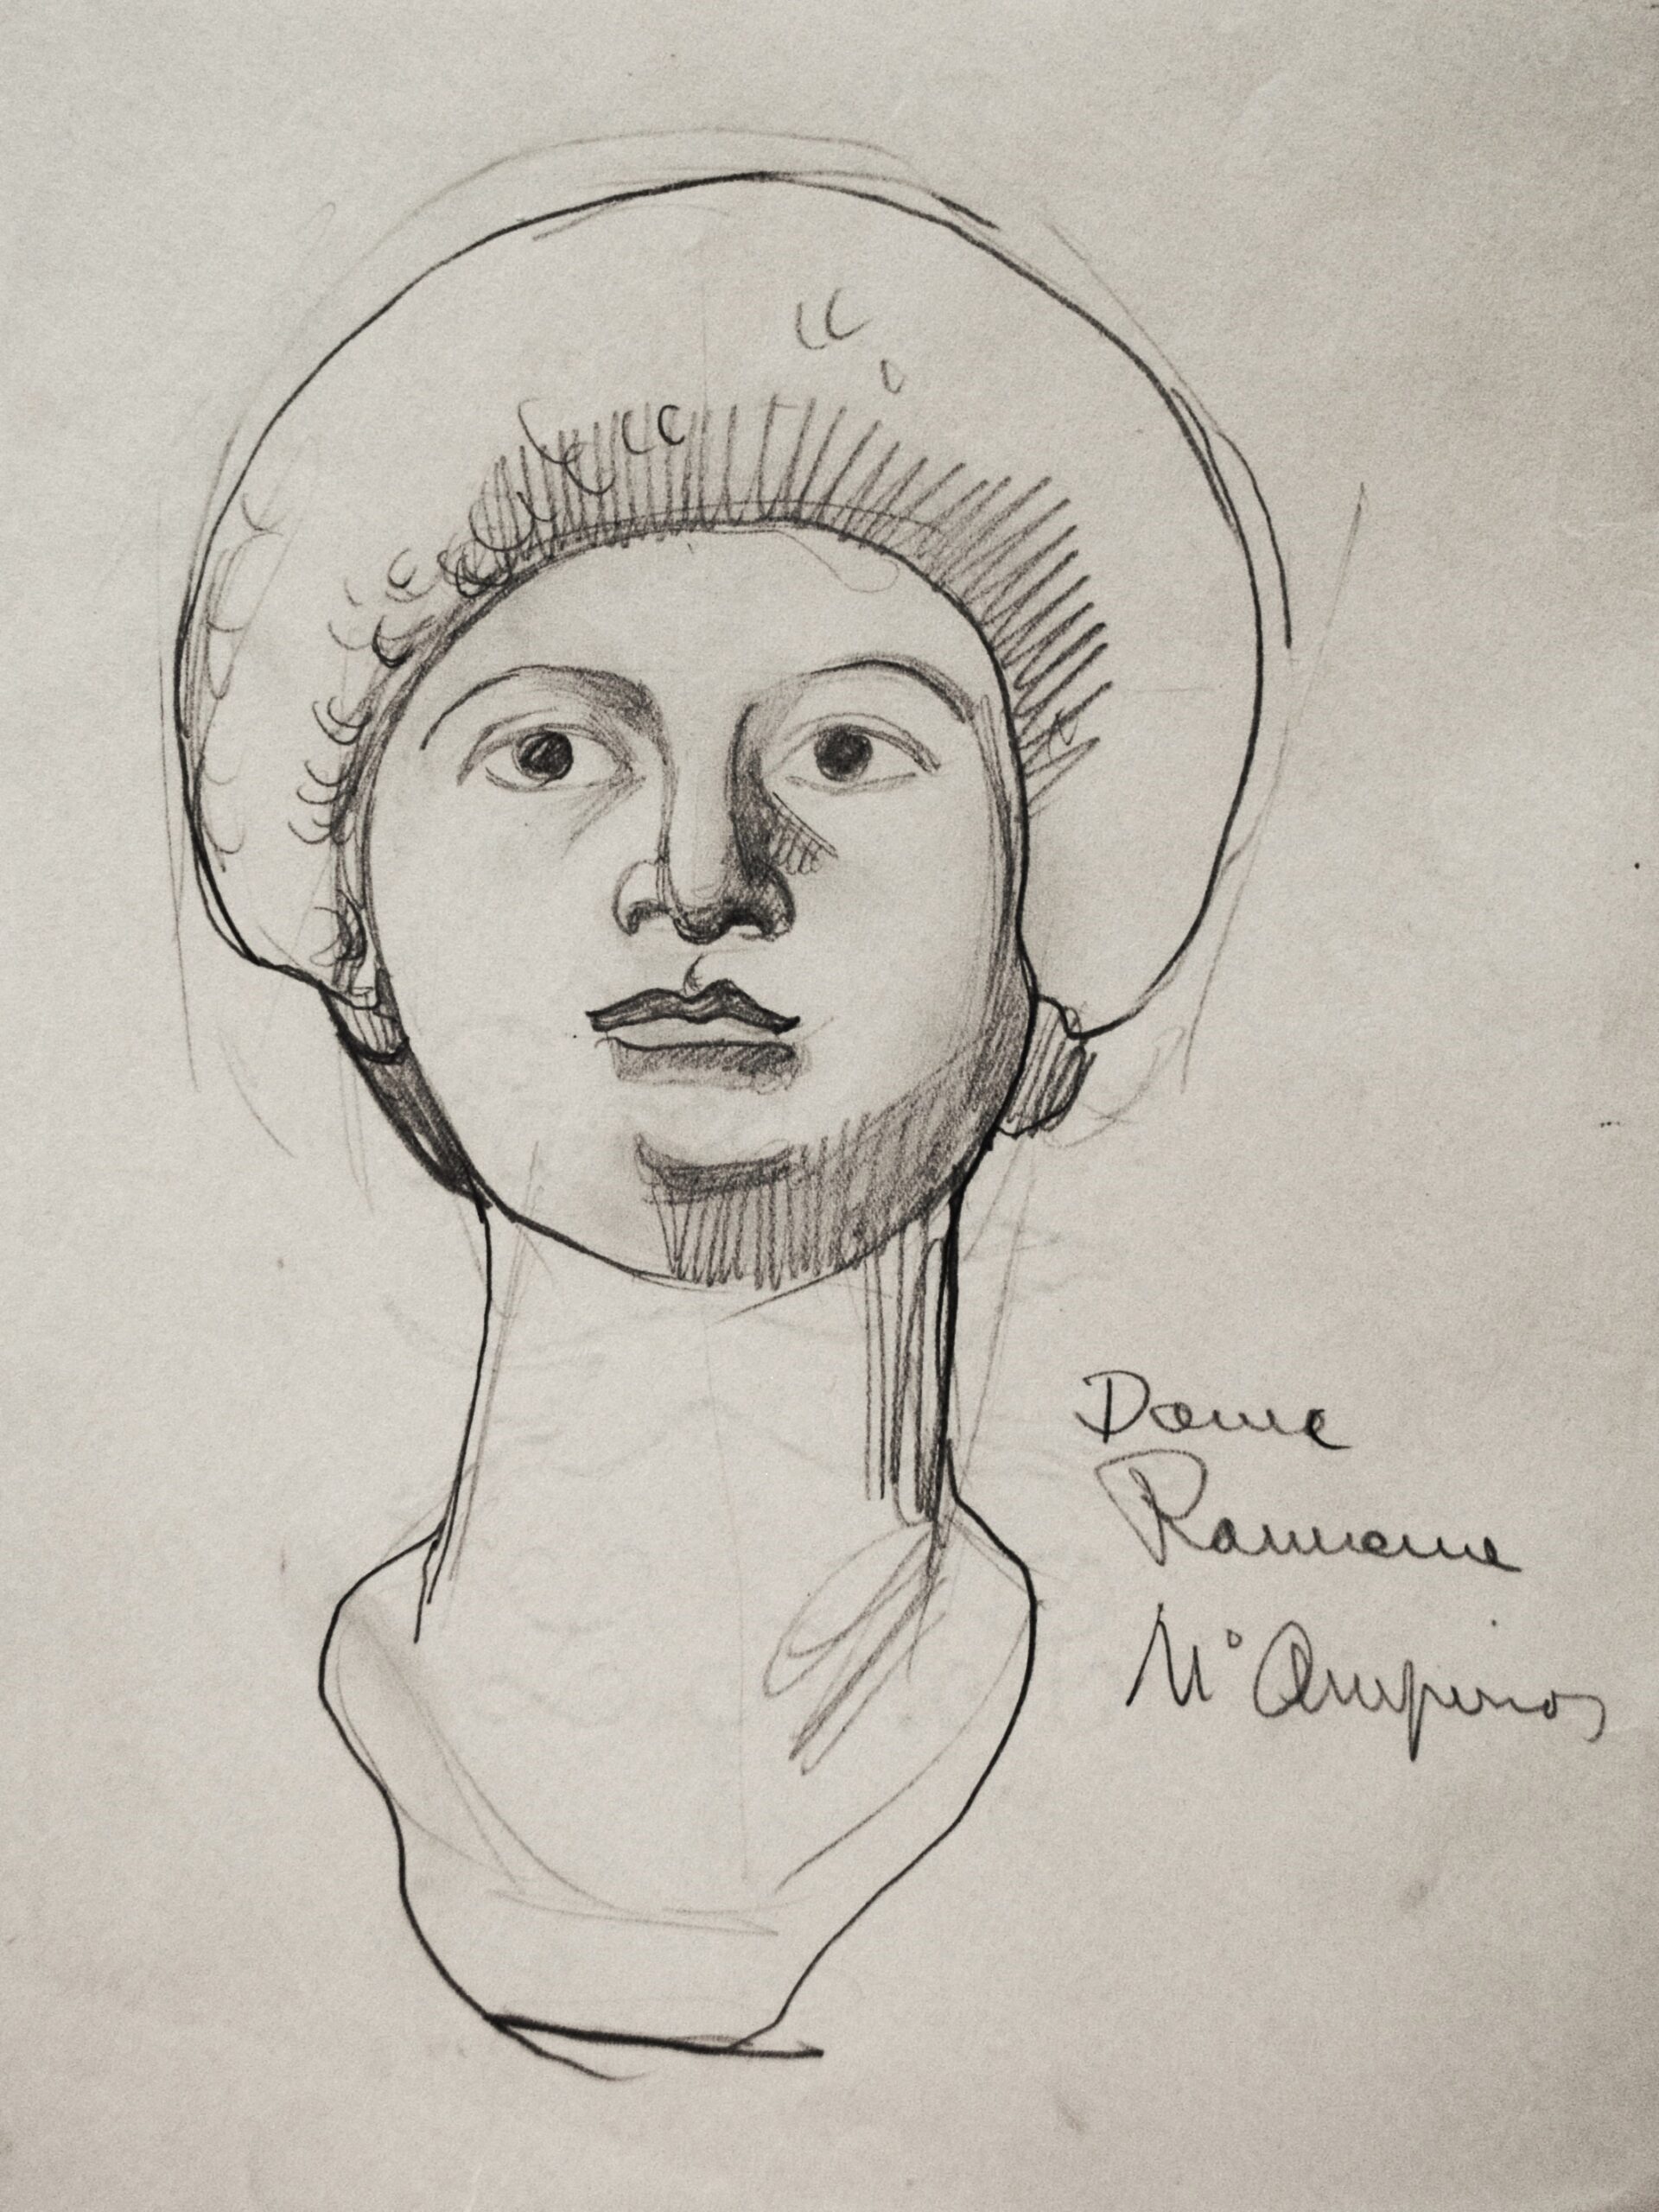 Dibujo de José Manaut titulado Dame Rameme, 1921. Lápiz sobre papel.